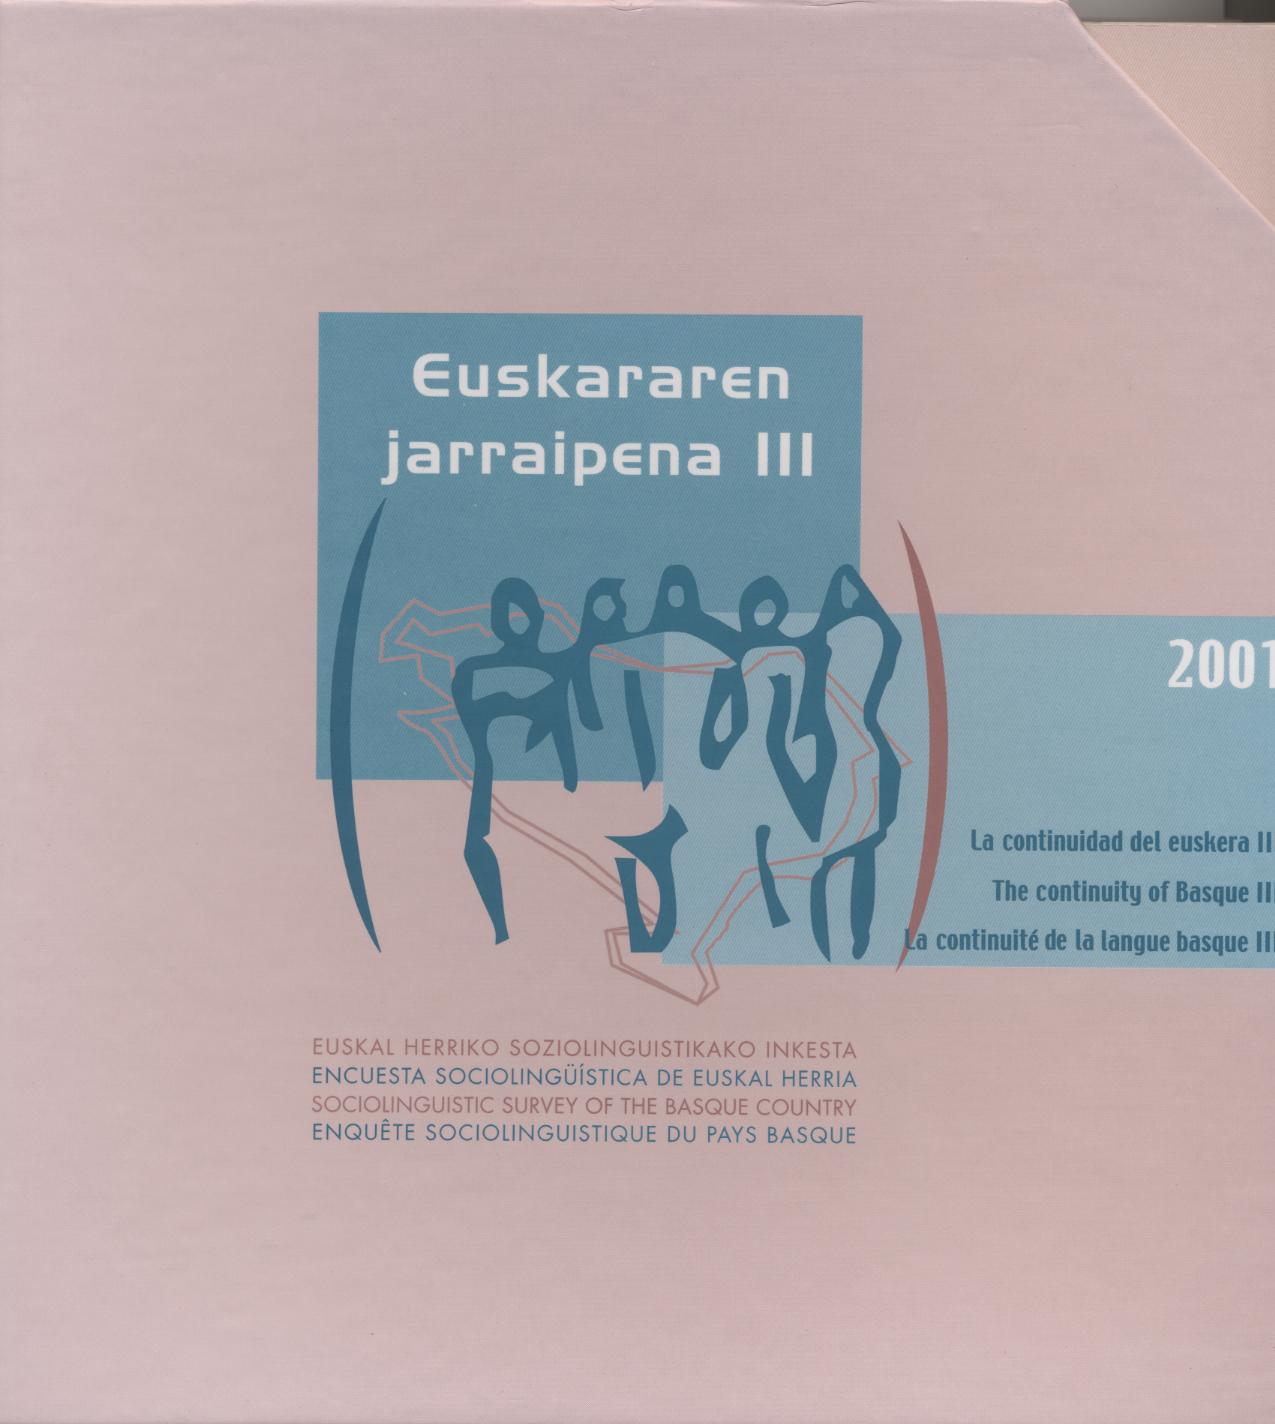 Encuesta Sociolingüística de Euskal Herria 2001. Euskararen jarraipena III